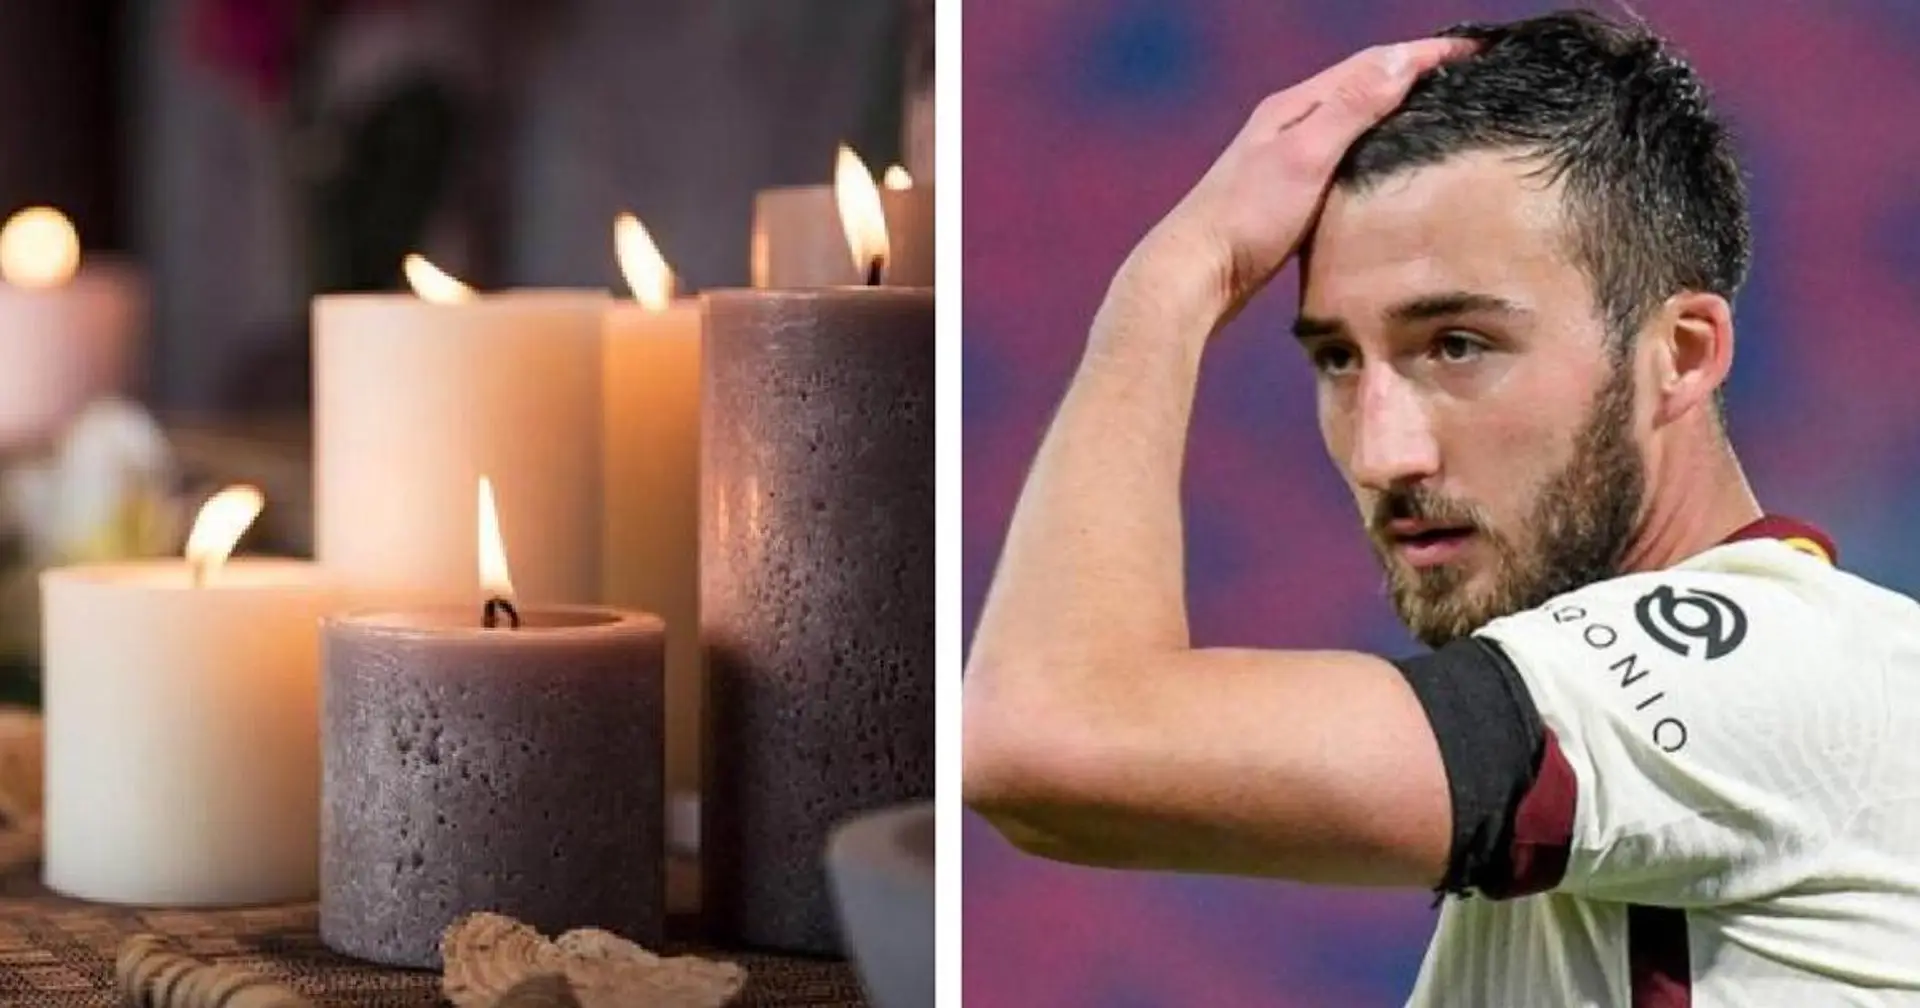 'Dios es un ce**o': Bryan Cristante, jugador de la Roma, suspendido por blasfemia